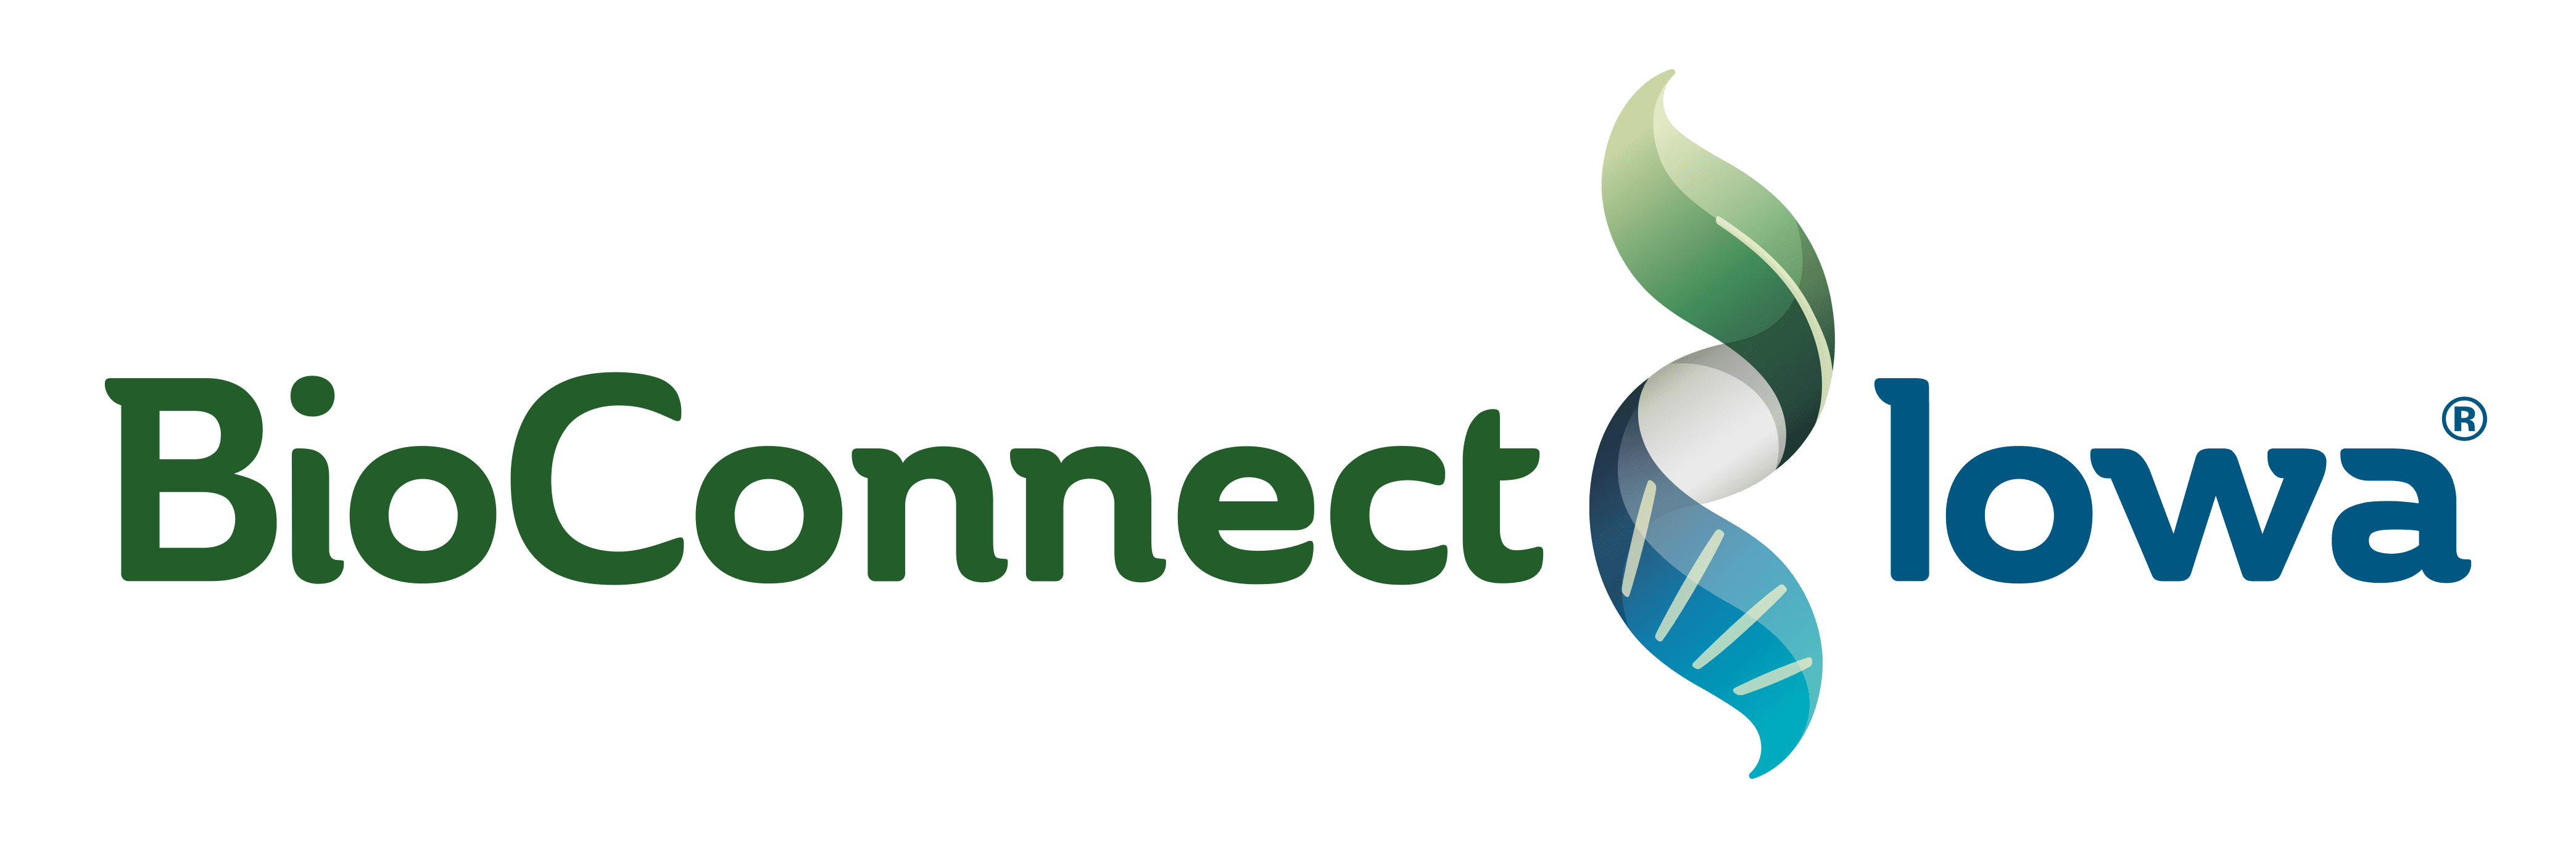 BioConnect Iowa logo